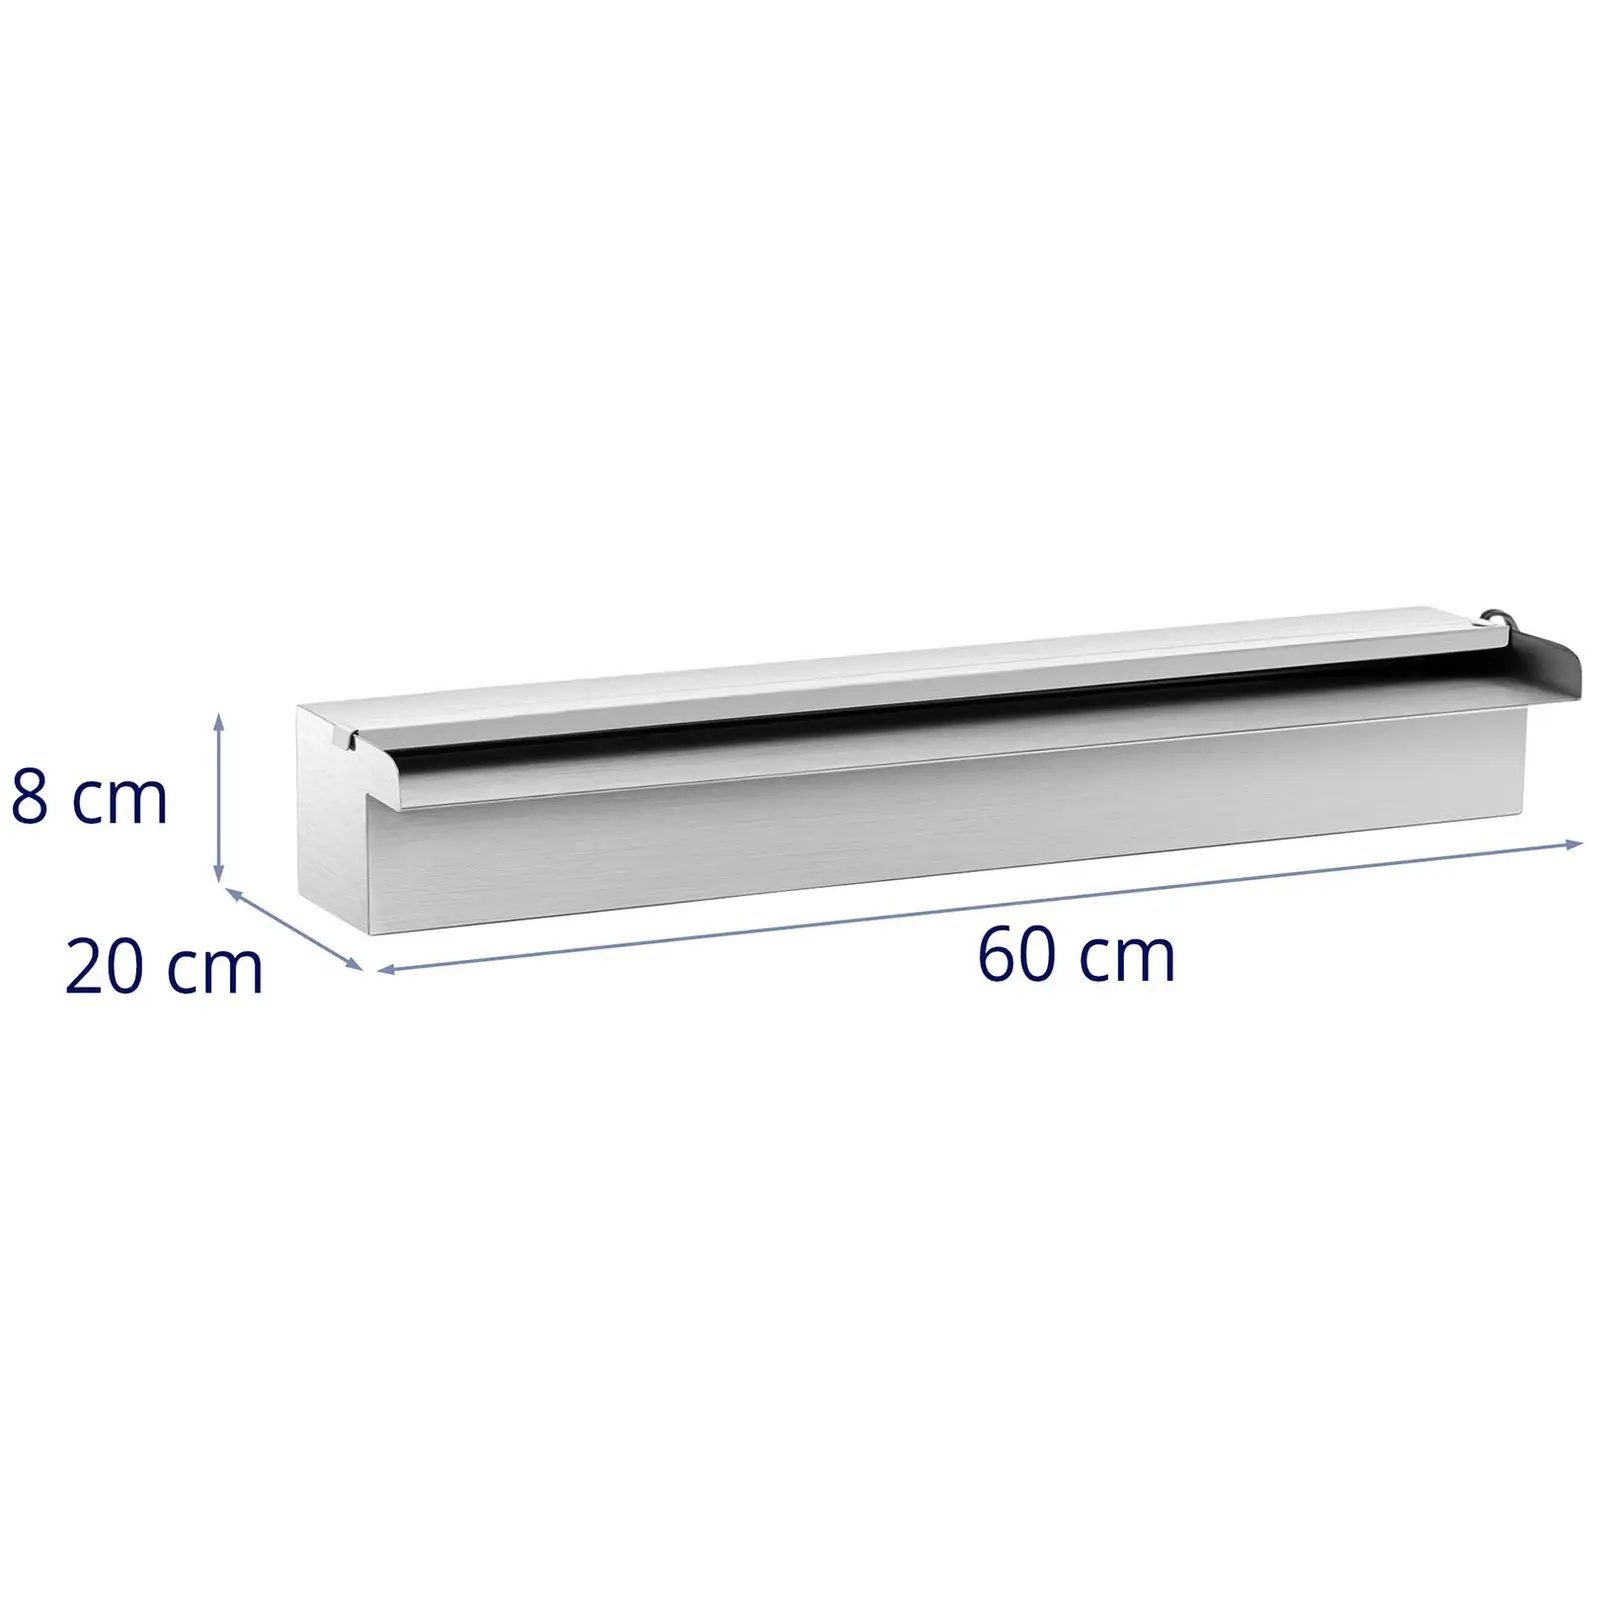 Schwalldusche - 60 cm - LED-Beleuchtung - Blau / Weiß - offener Wasserauslauf